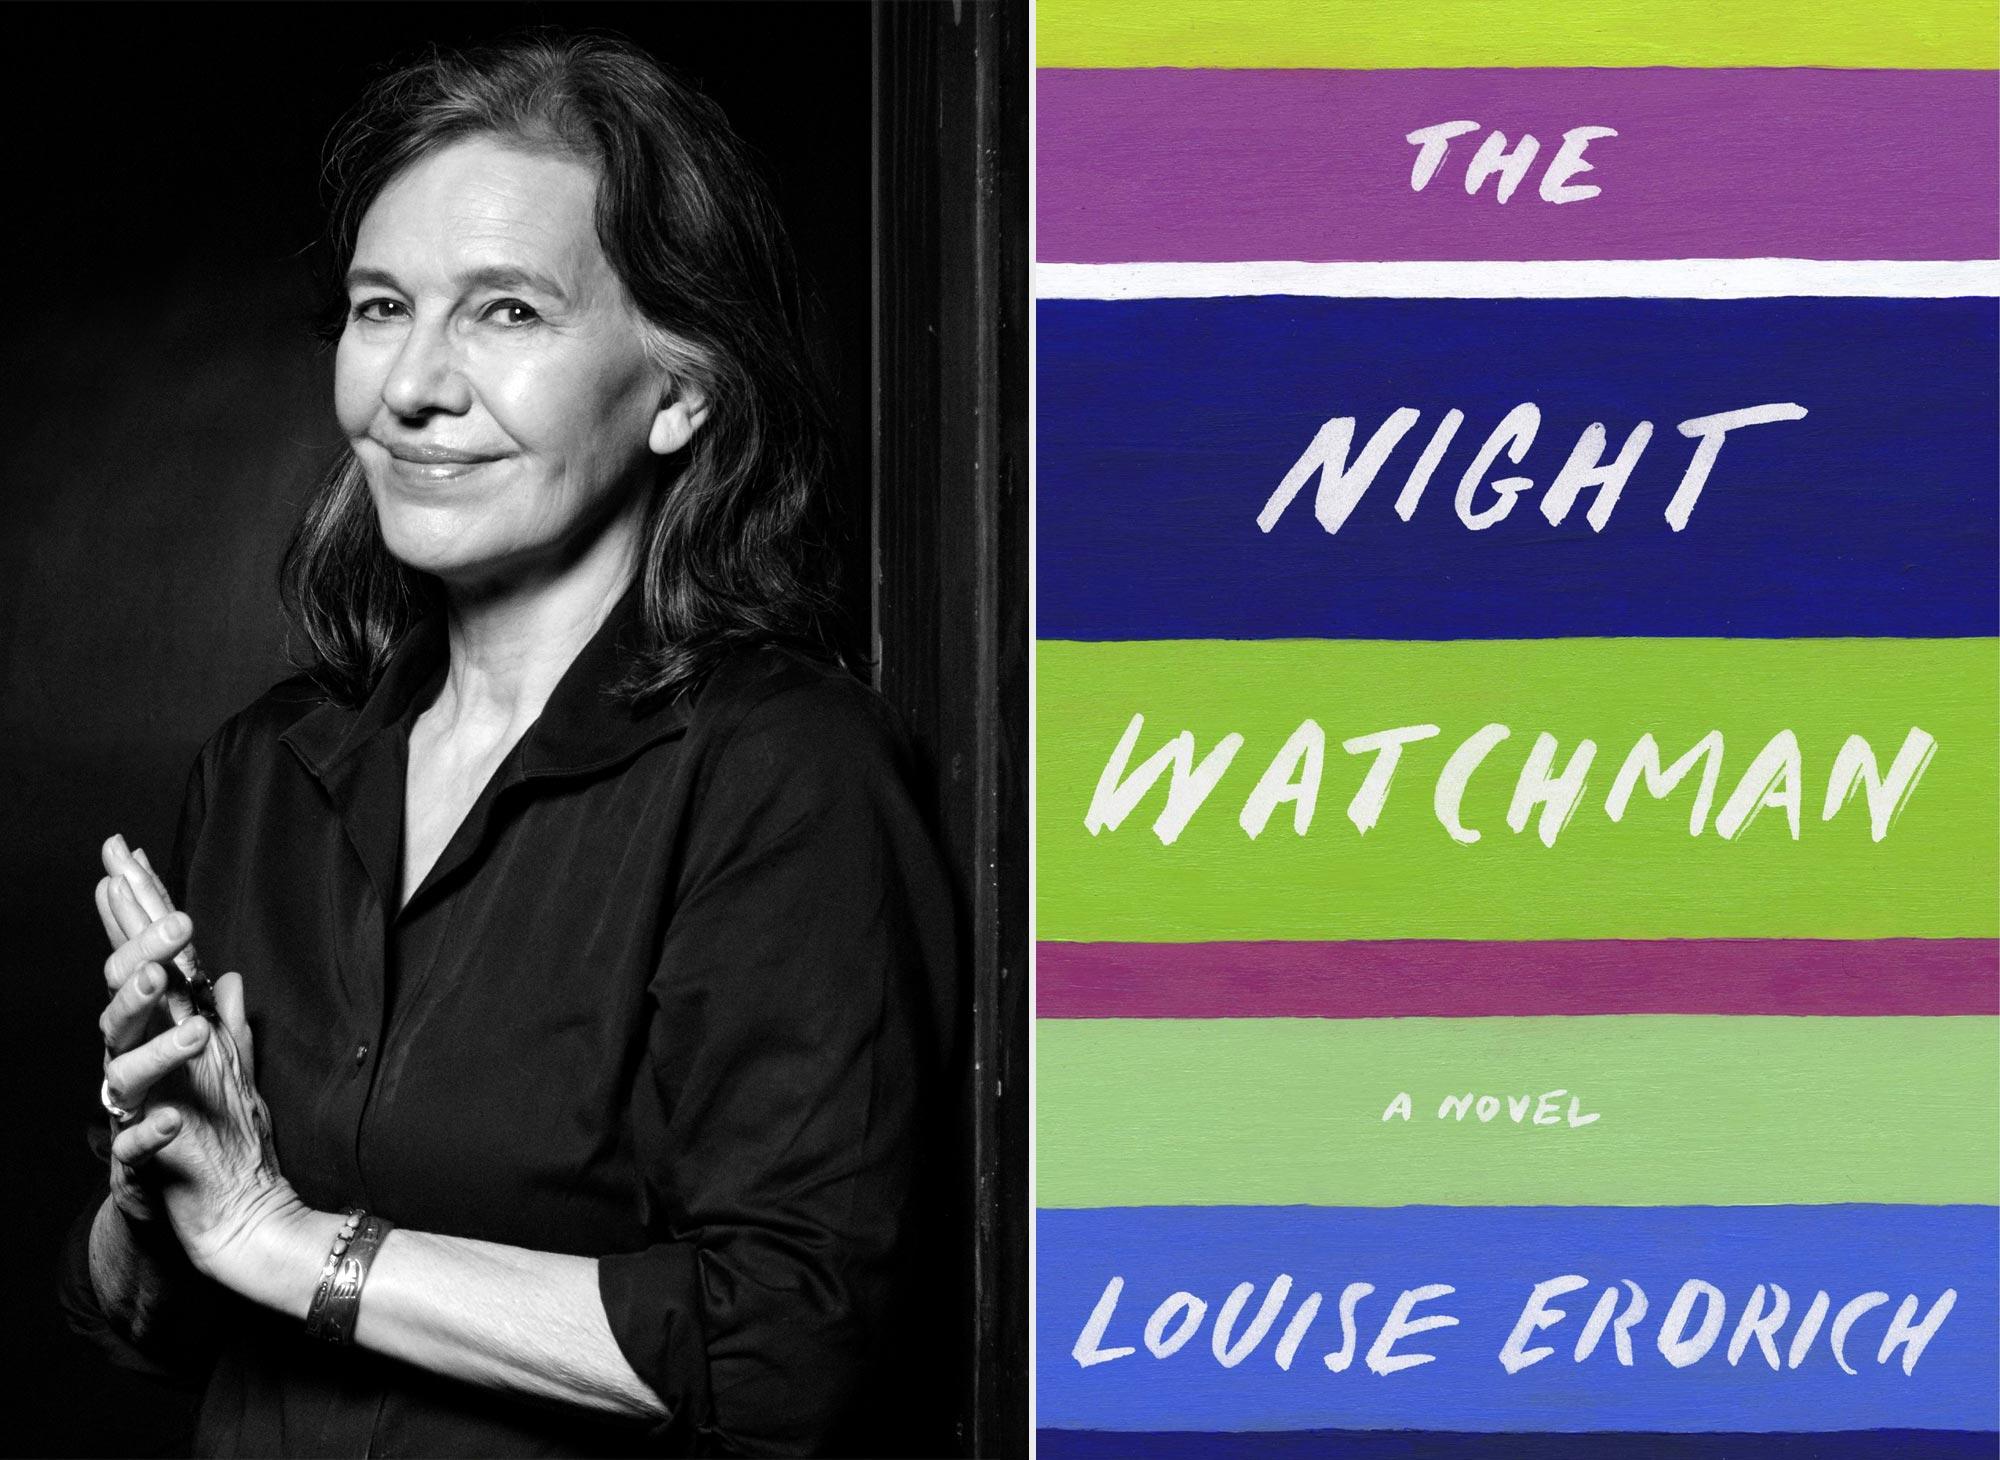 رواية The Night watchman لصاحبتها، الكاتبة الأمريكية الحاصلة على عديد الجوائز الكبرى، لويز إيردريش.